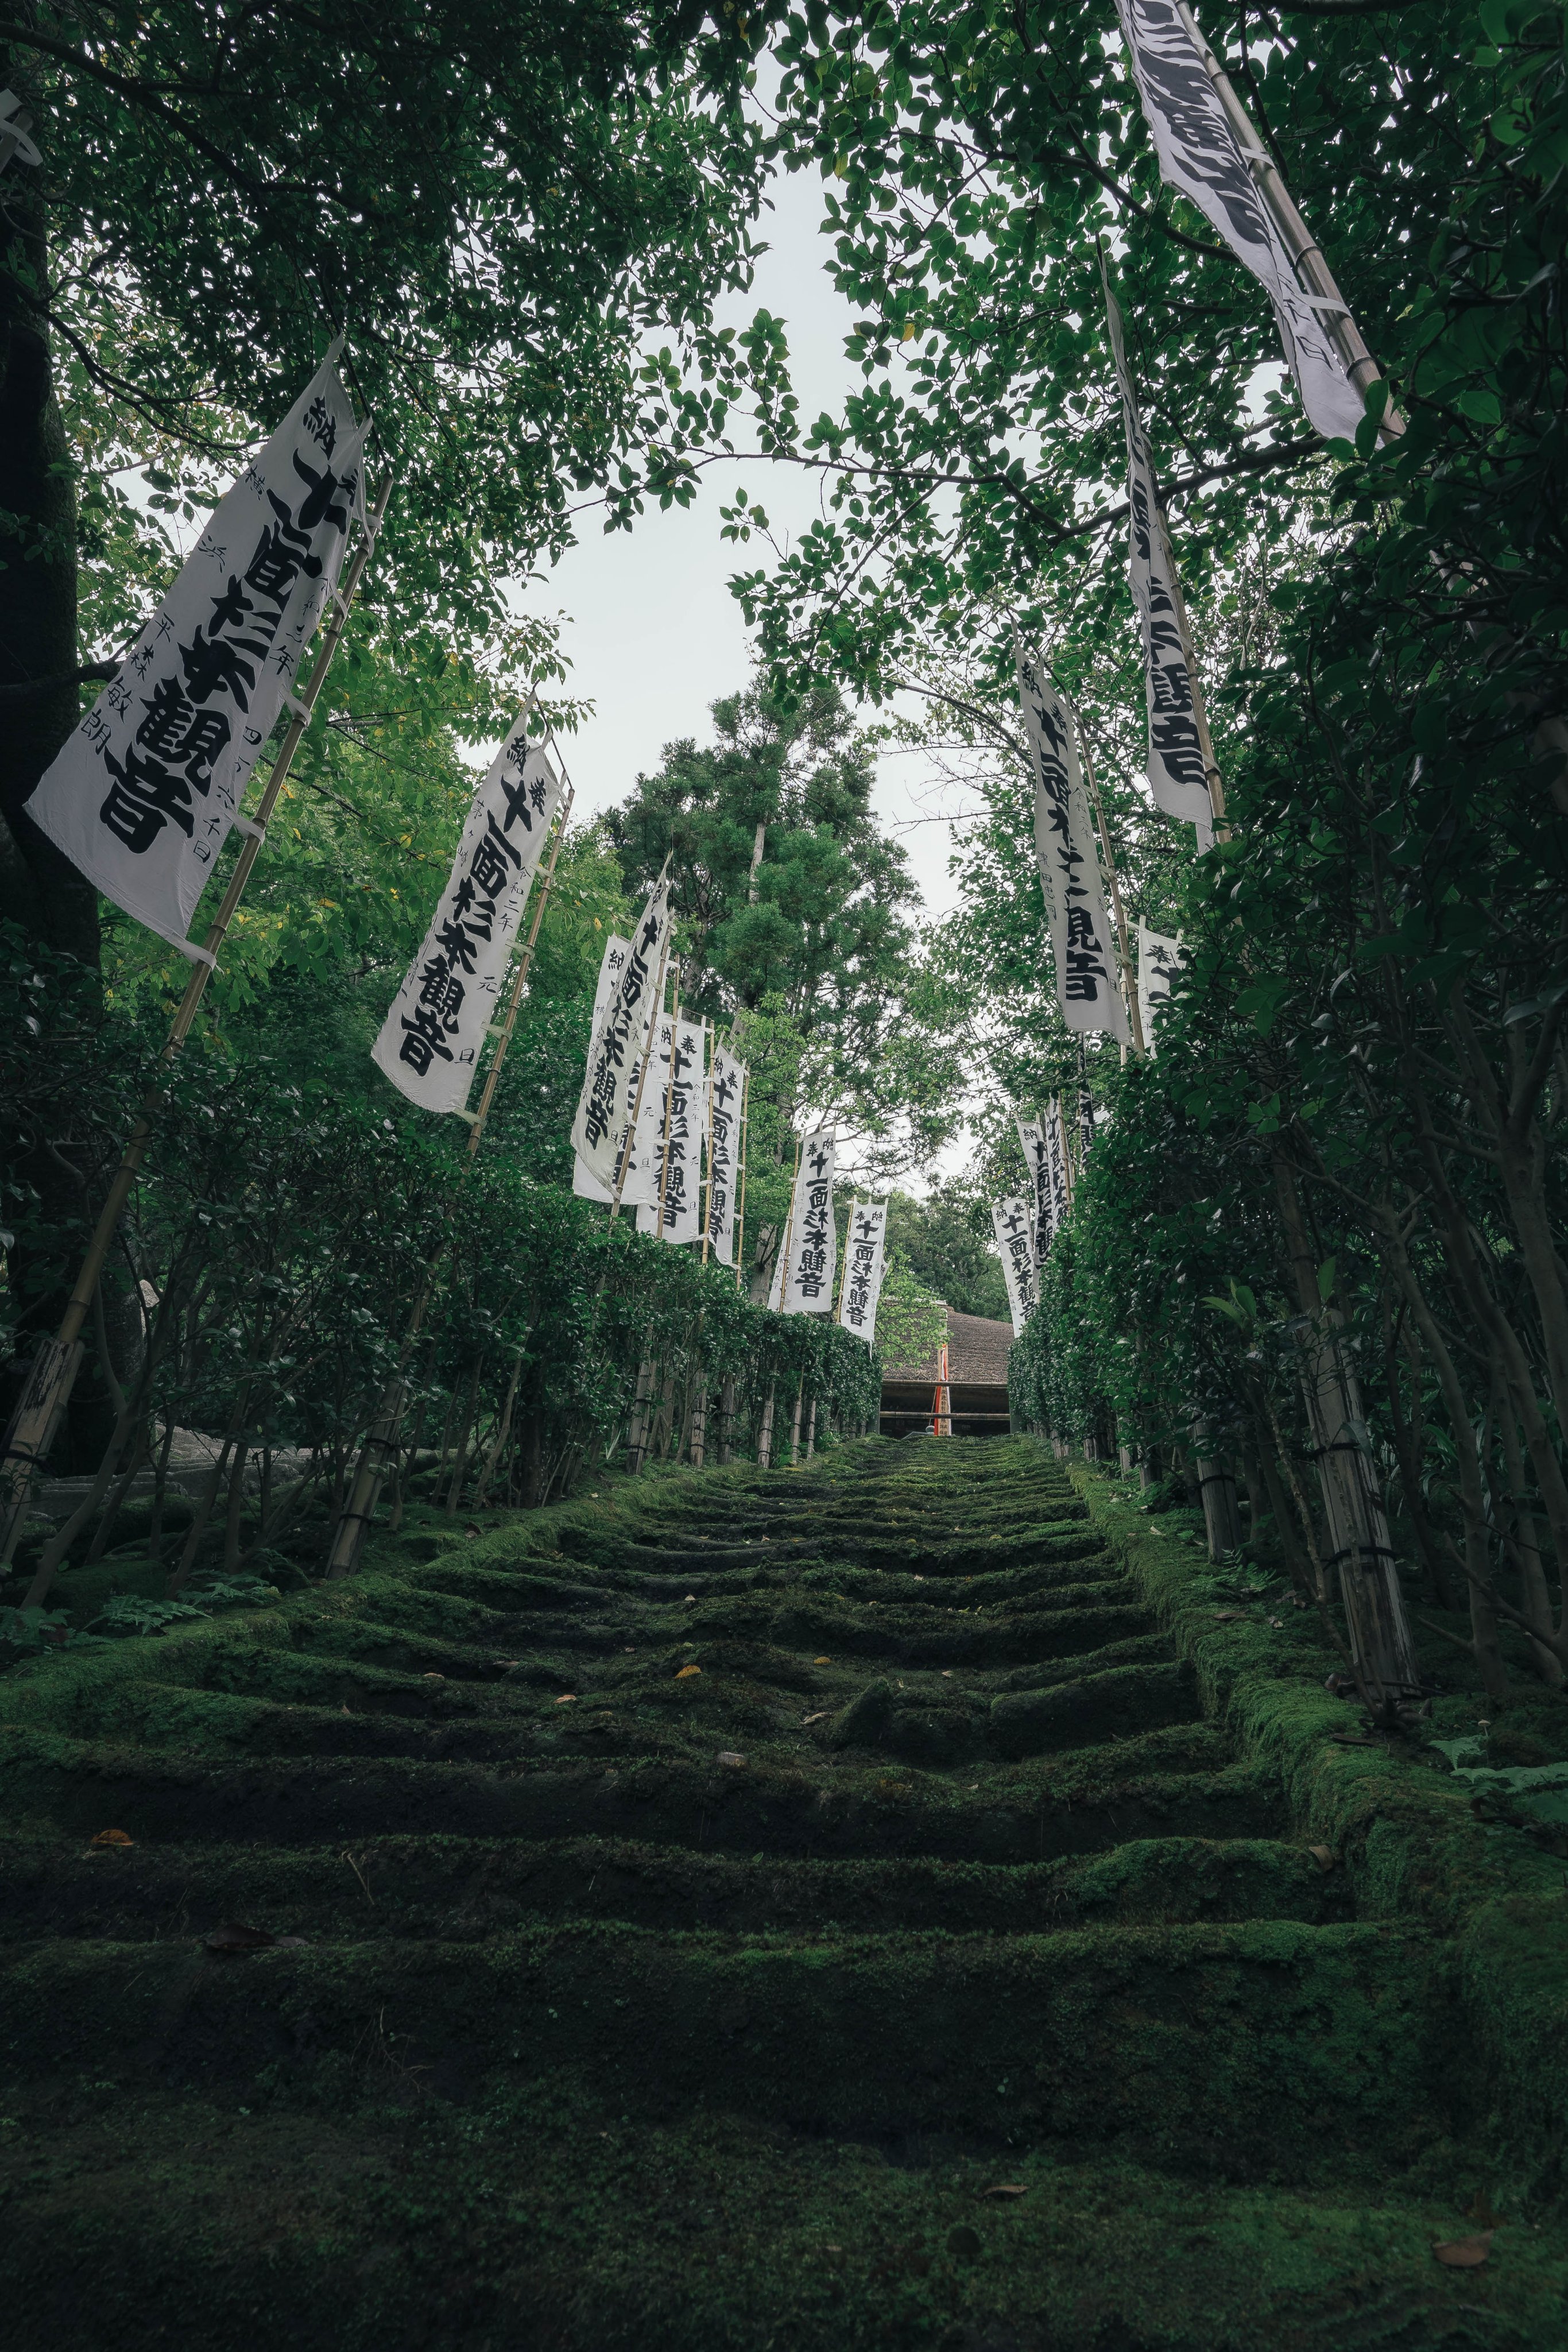 Yuuui 鎌倉にある苔の階段が美しい T Co Qqxdc6pzmd Twitter